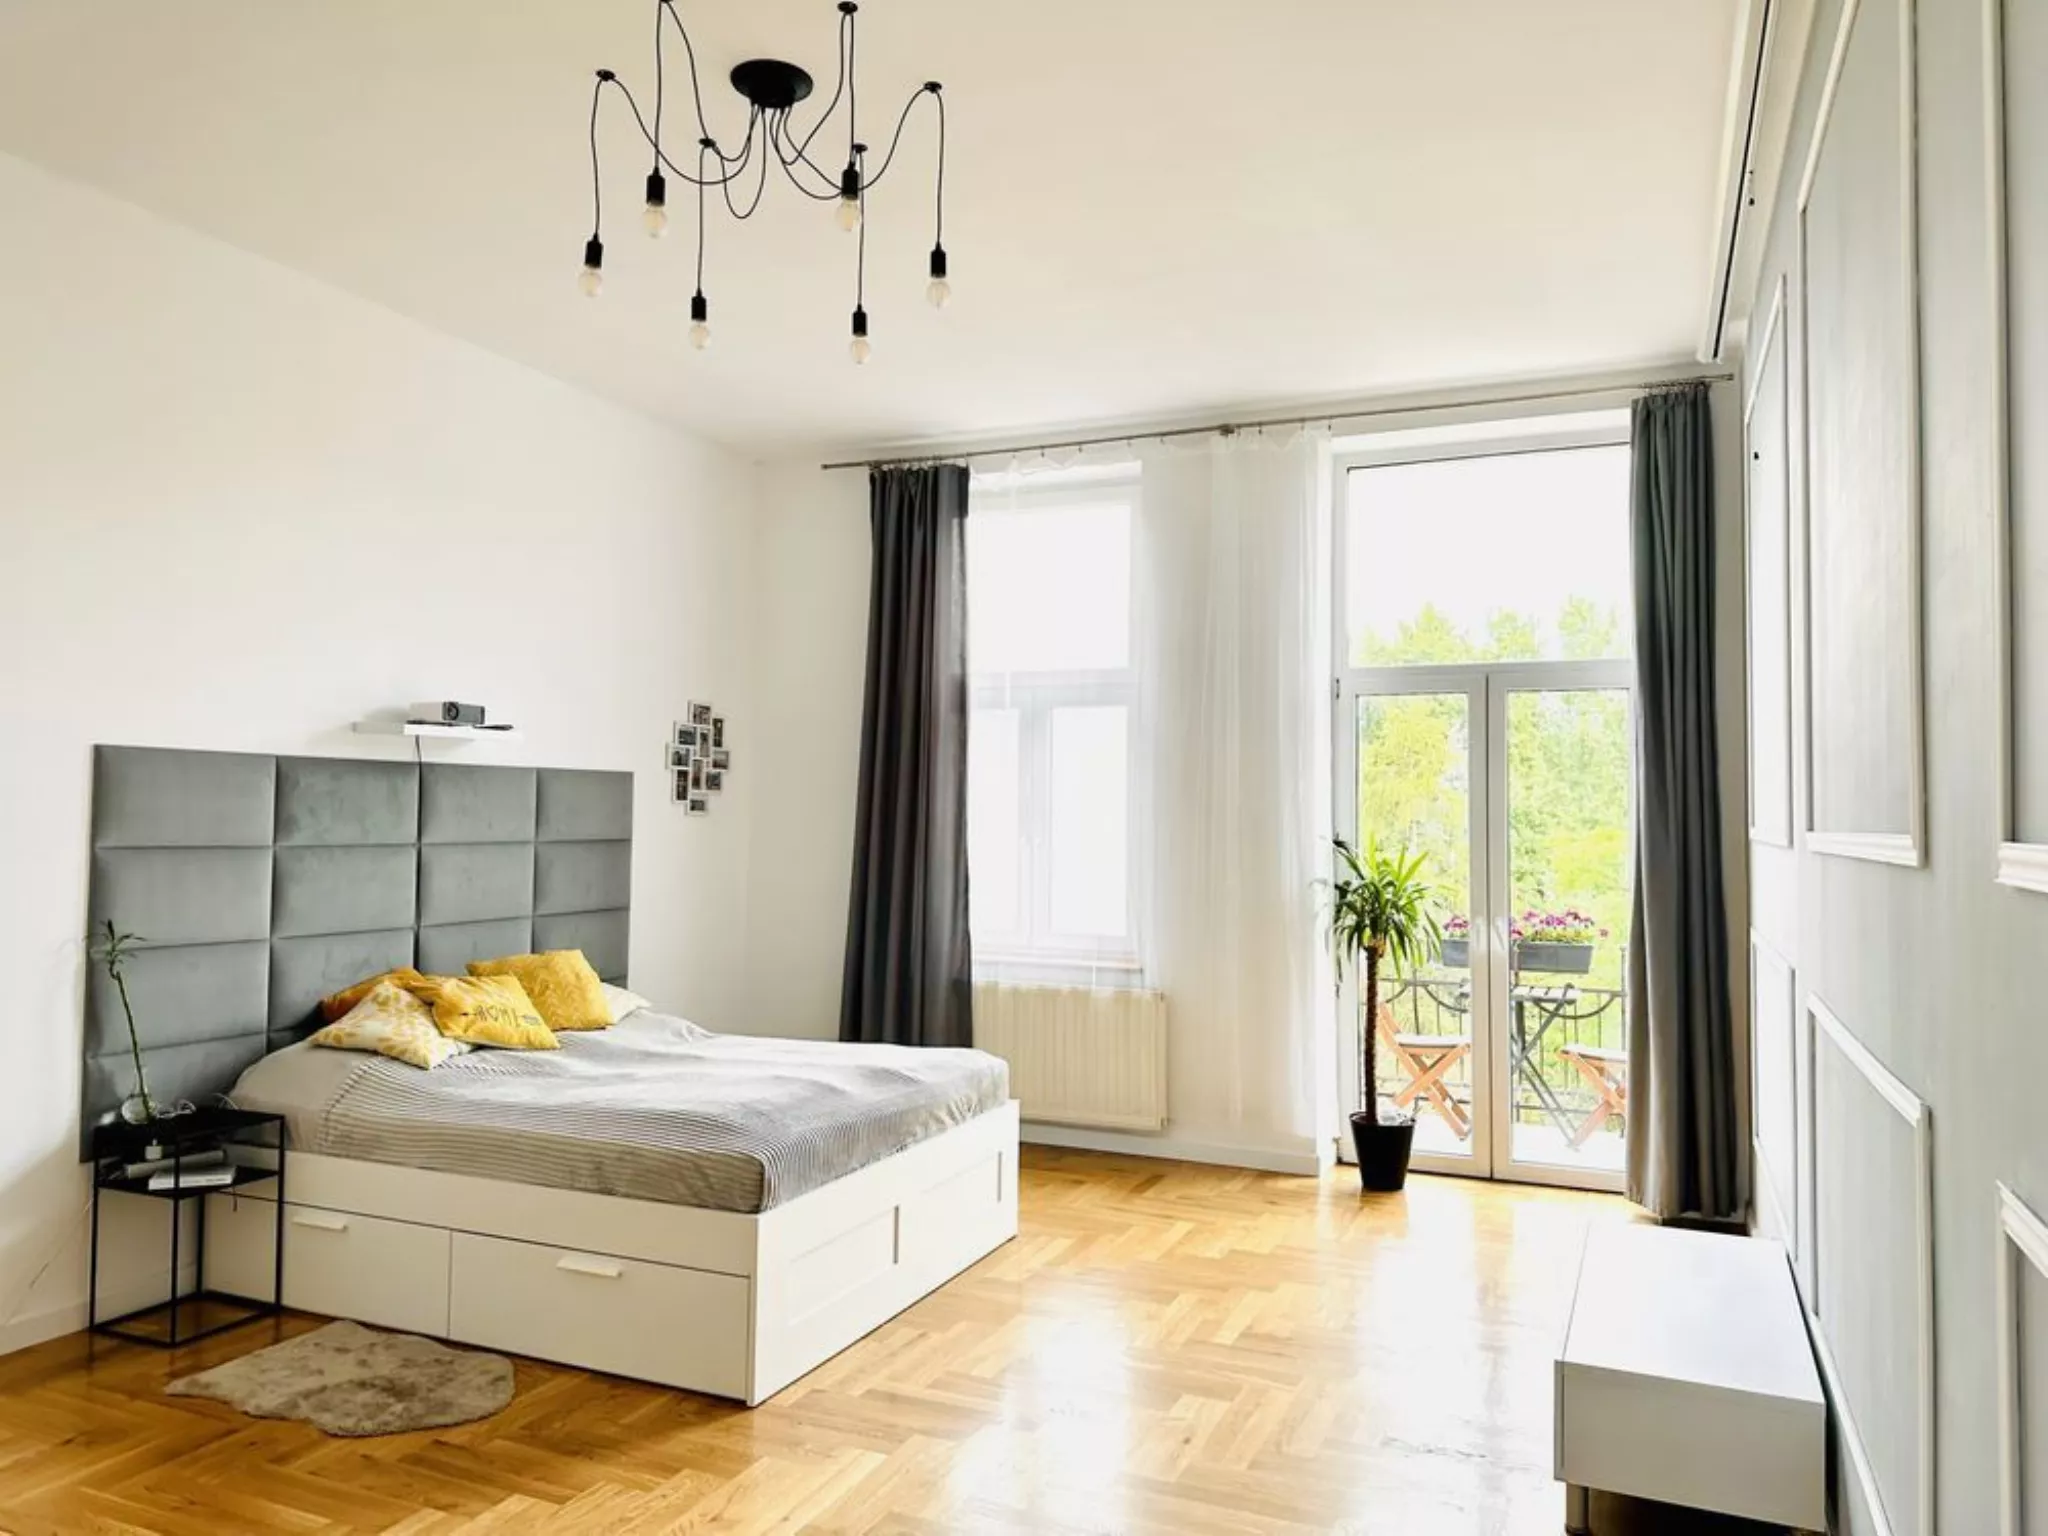 Grzegórzki, 113m2, 4 pokoje, mieszkanie sprzedam - Mieszkanie na sprzedaż Kraków